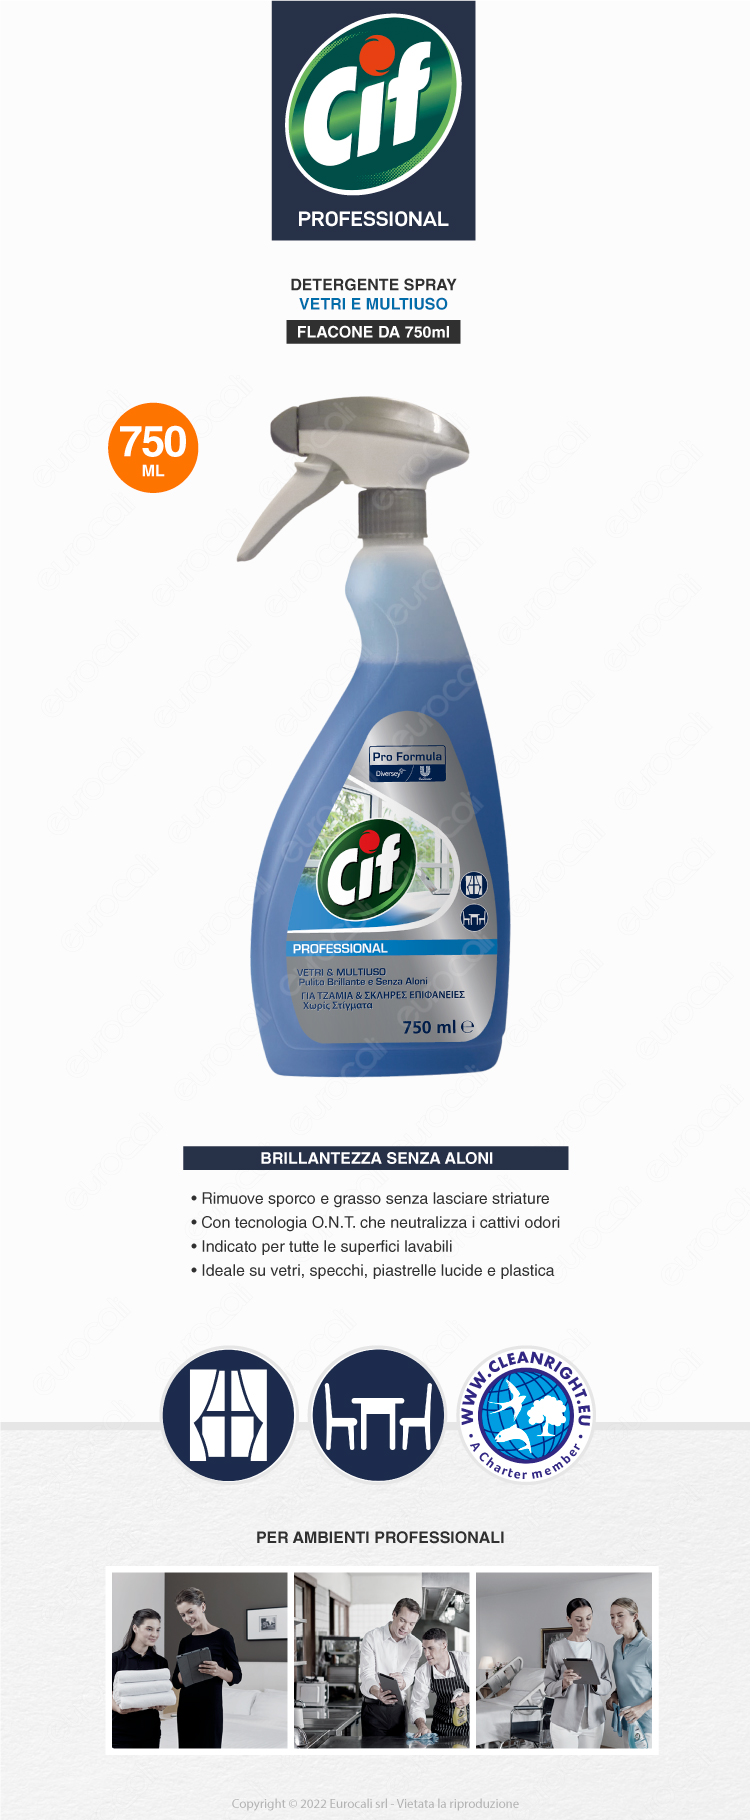 Detergente Spray Vetri e Multiuso da 750ml Cif Professional